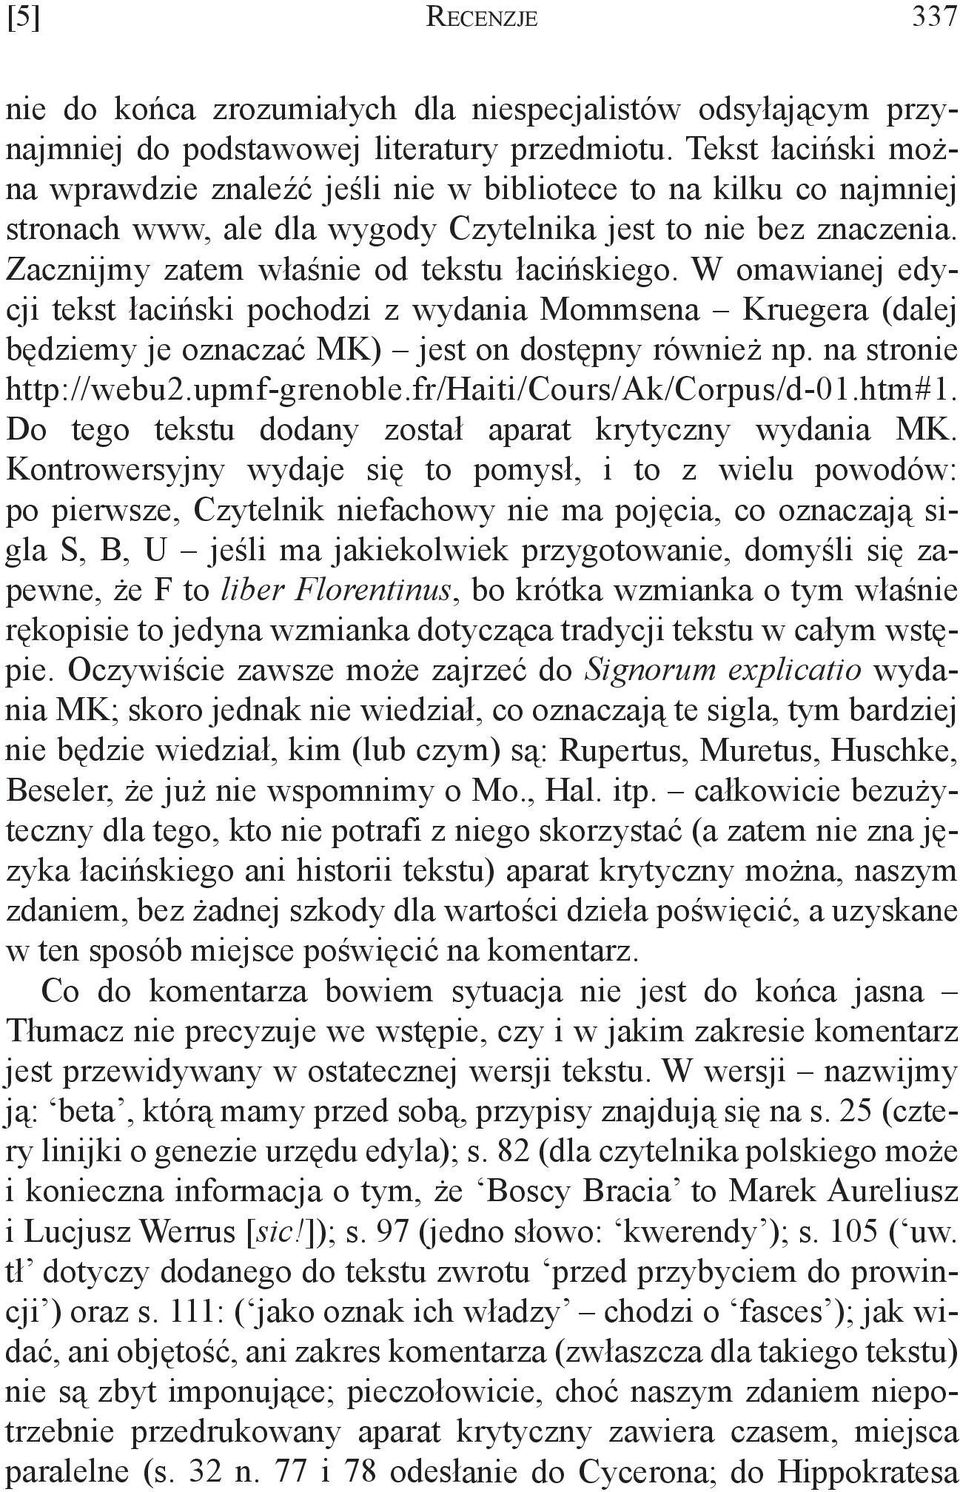 W omawianej edycji tekst łaciński pochodzi z wydania Mommsena Kruegera (dalej będziemy je oznaczać MK) jest on dostępny również np. na stronie http://webu2.upmf-grenoble.fr/haiti/cours/ak/corpus/d-01.